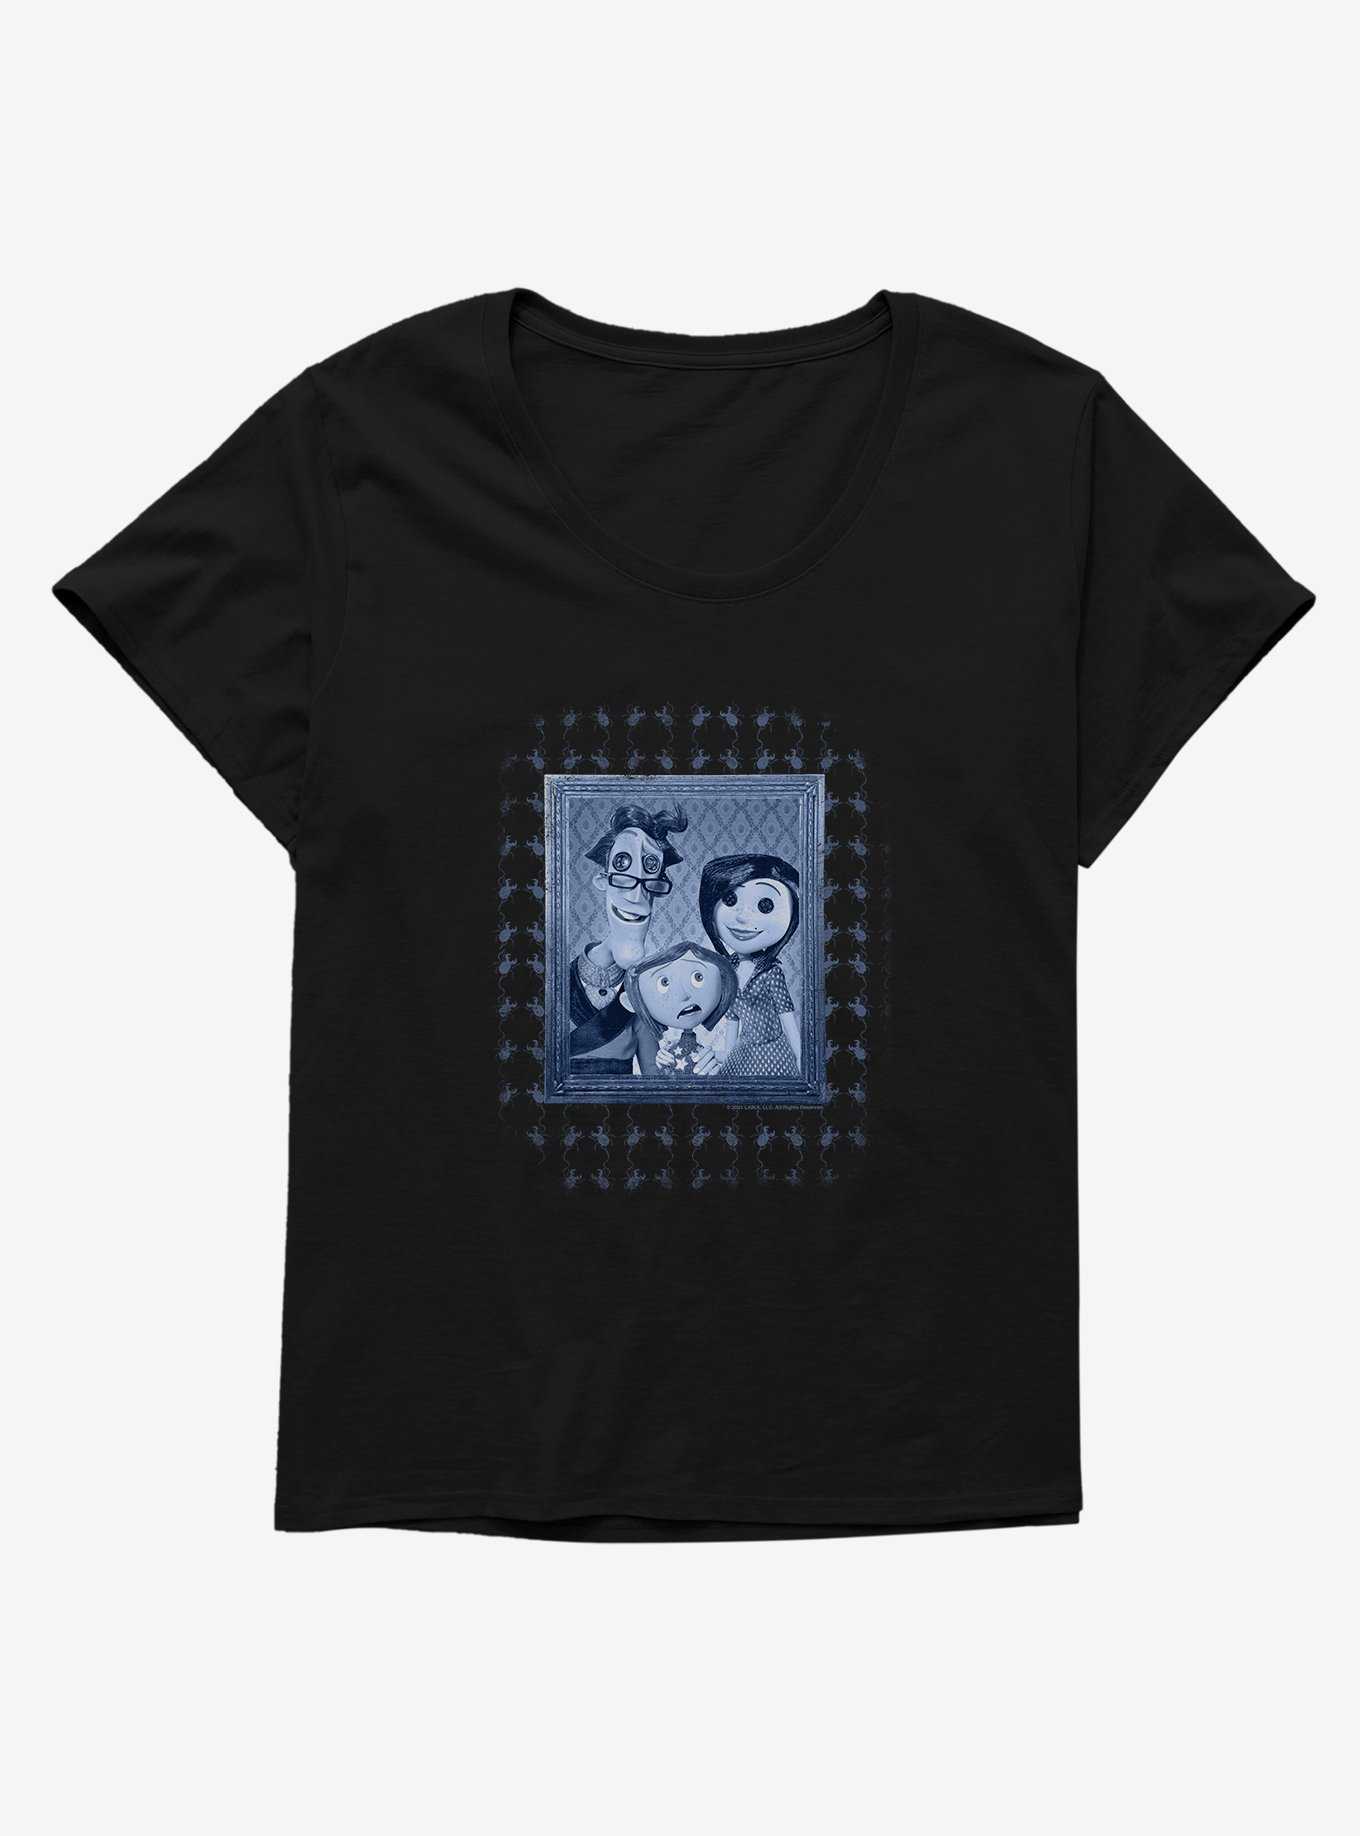 Coraline Family Portrait Womens T-Shirt Plus Size, , hi-res